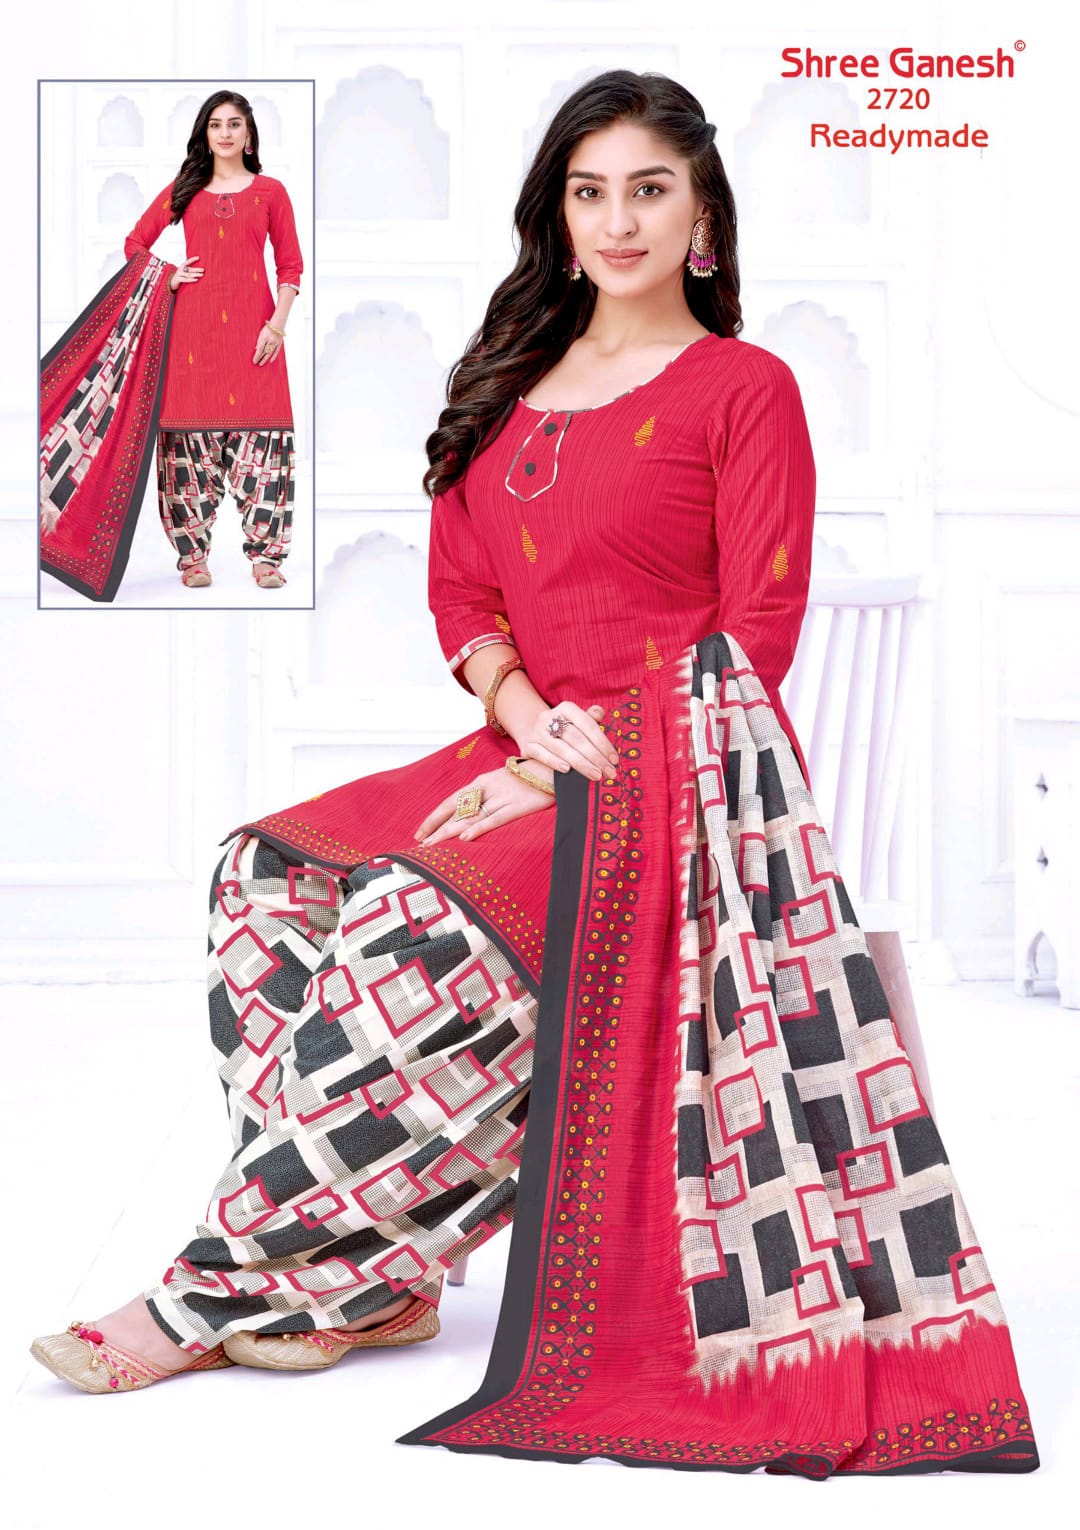 Shree Ganesh Hansika Kiyara Vol 7 Readymade Cotton Patiyala Special Suits